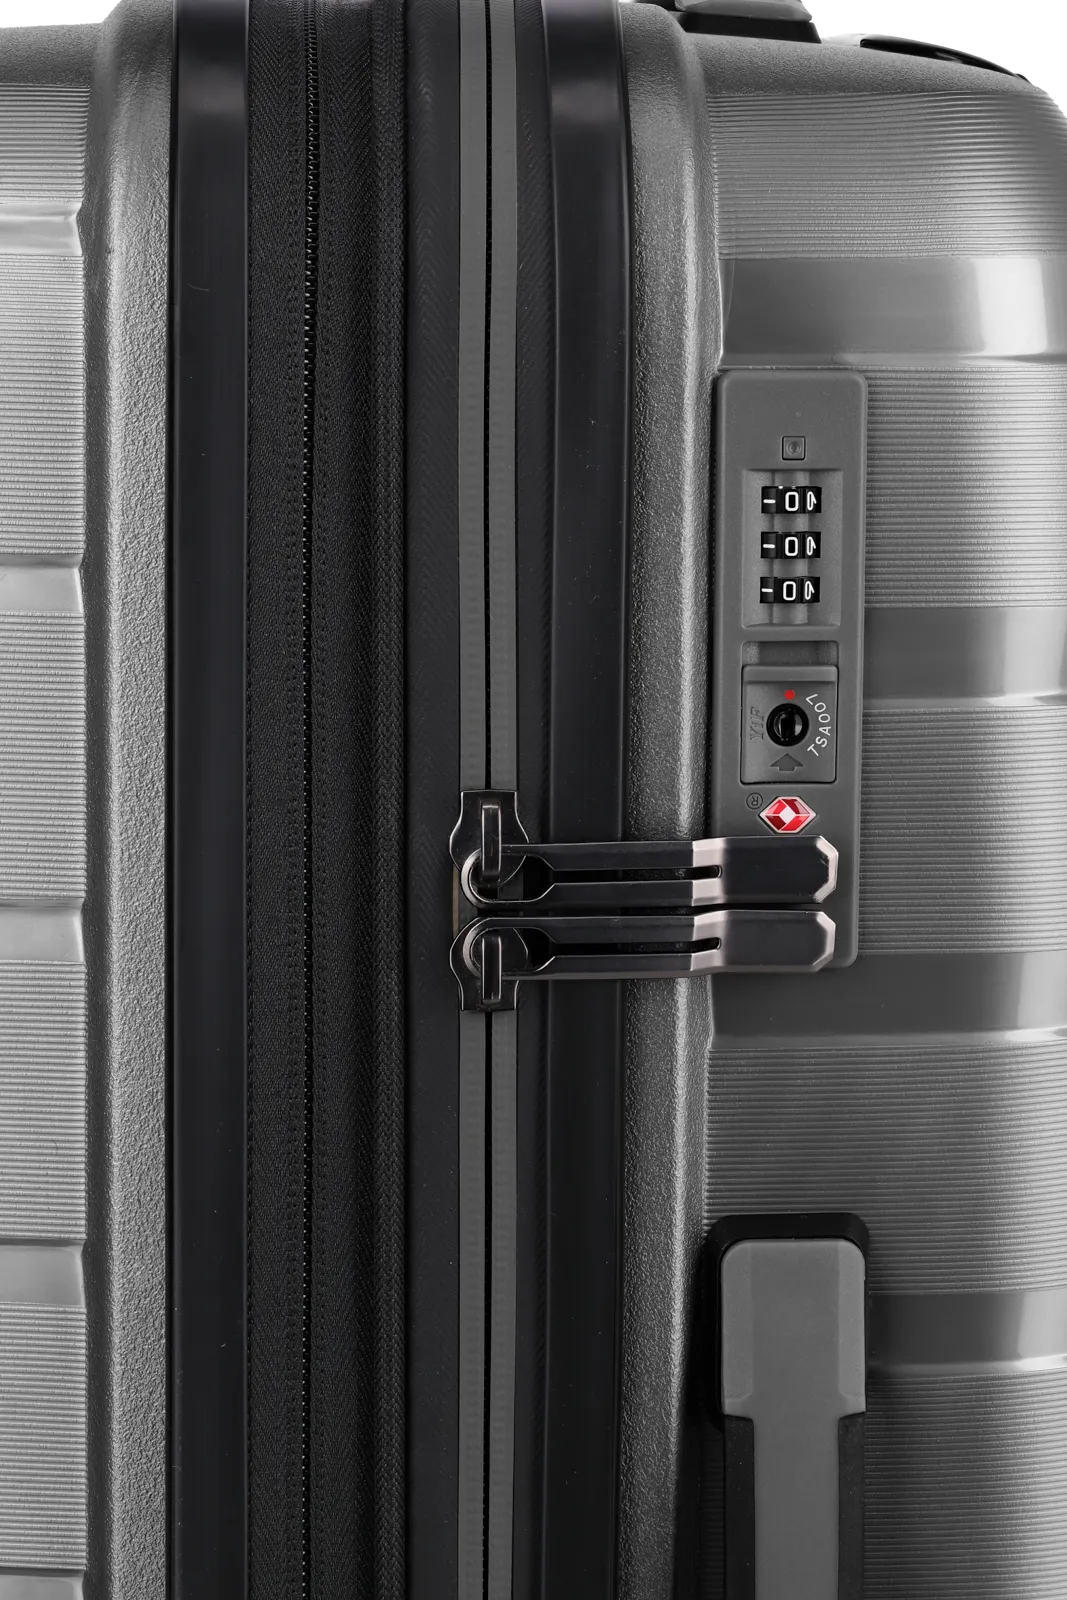 travelite AirBase Koffer mit geöffneter Vortasche in anthrazit Größe S+